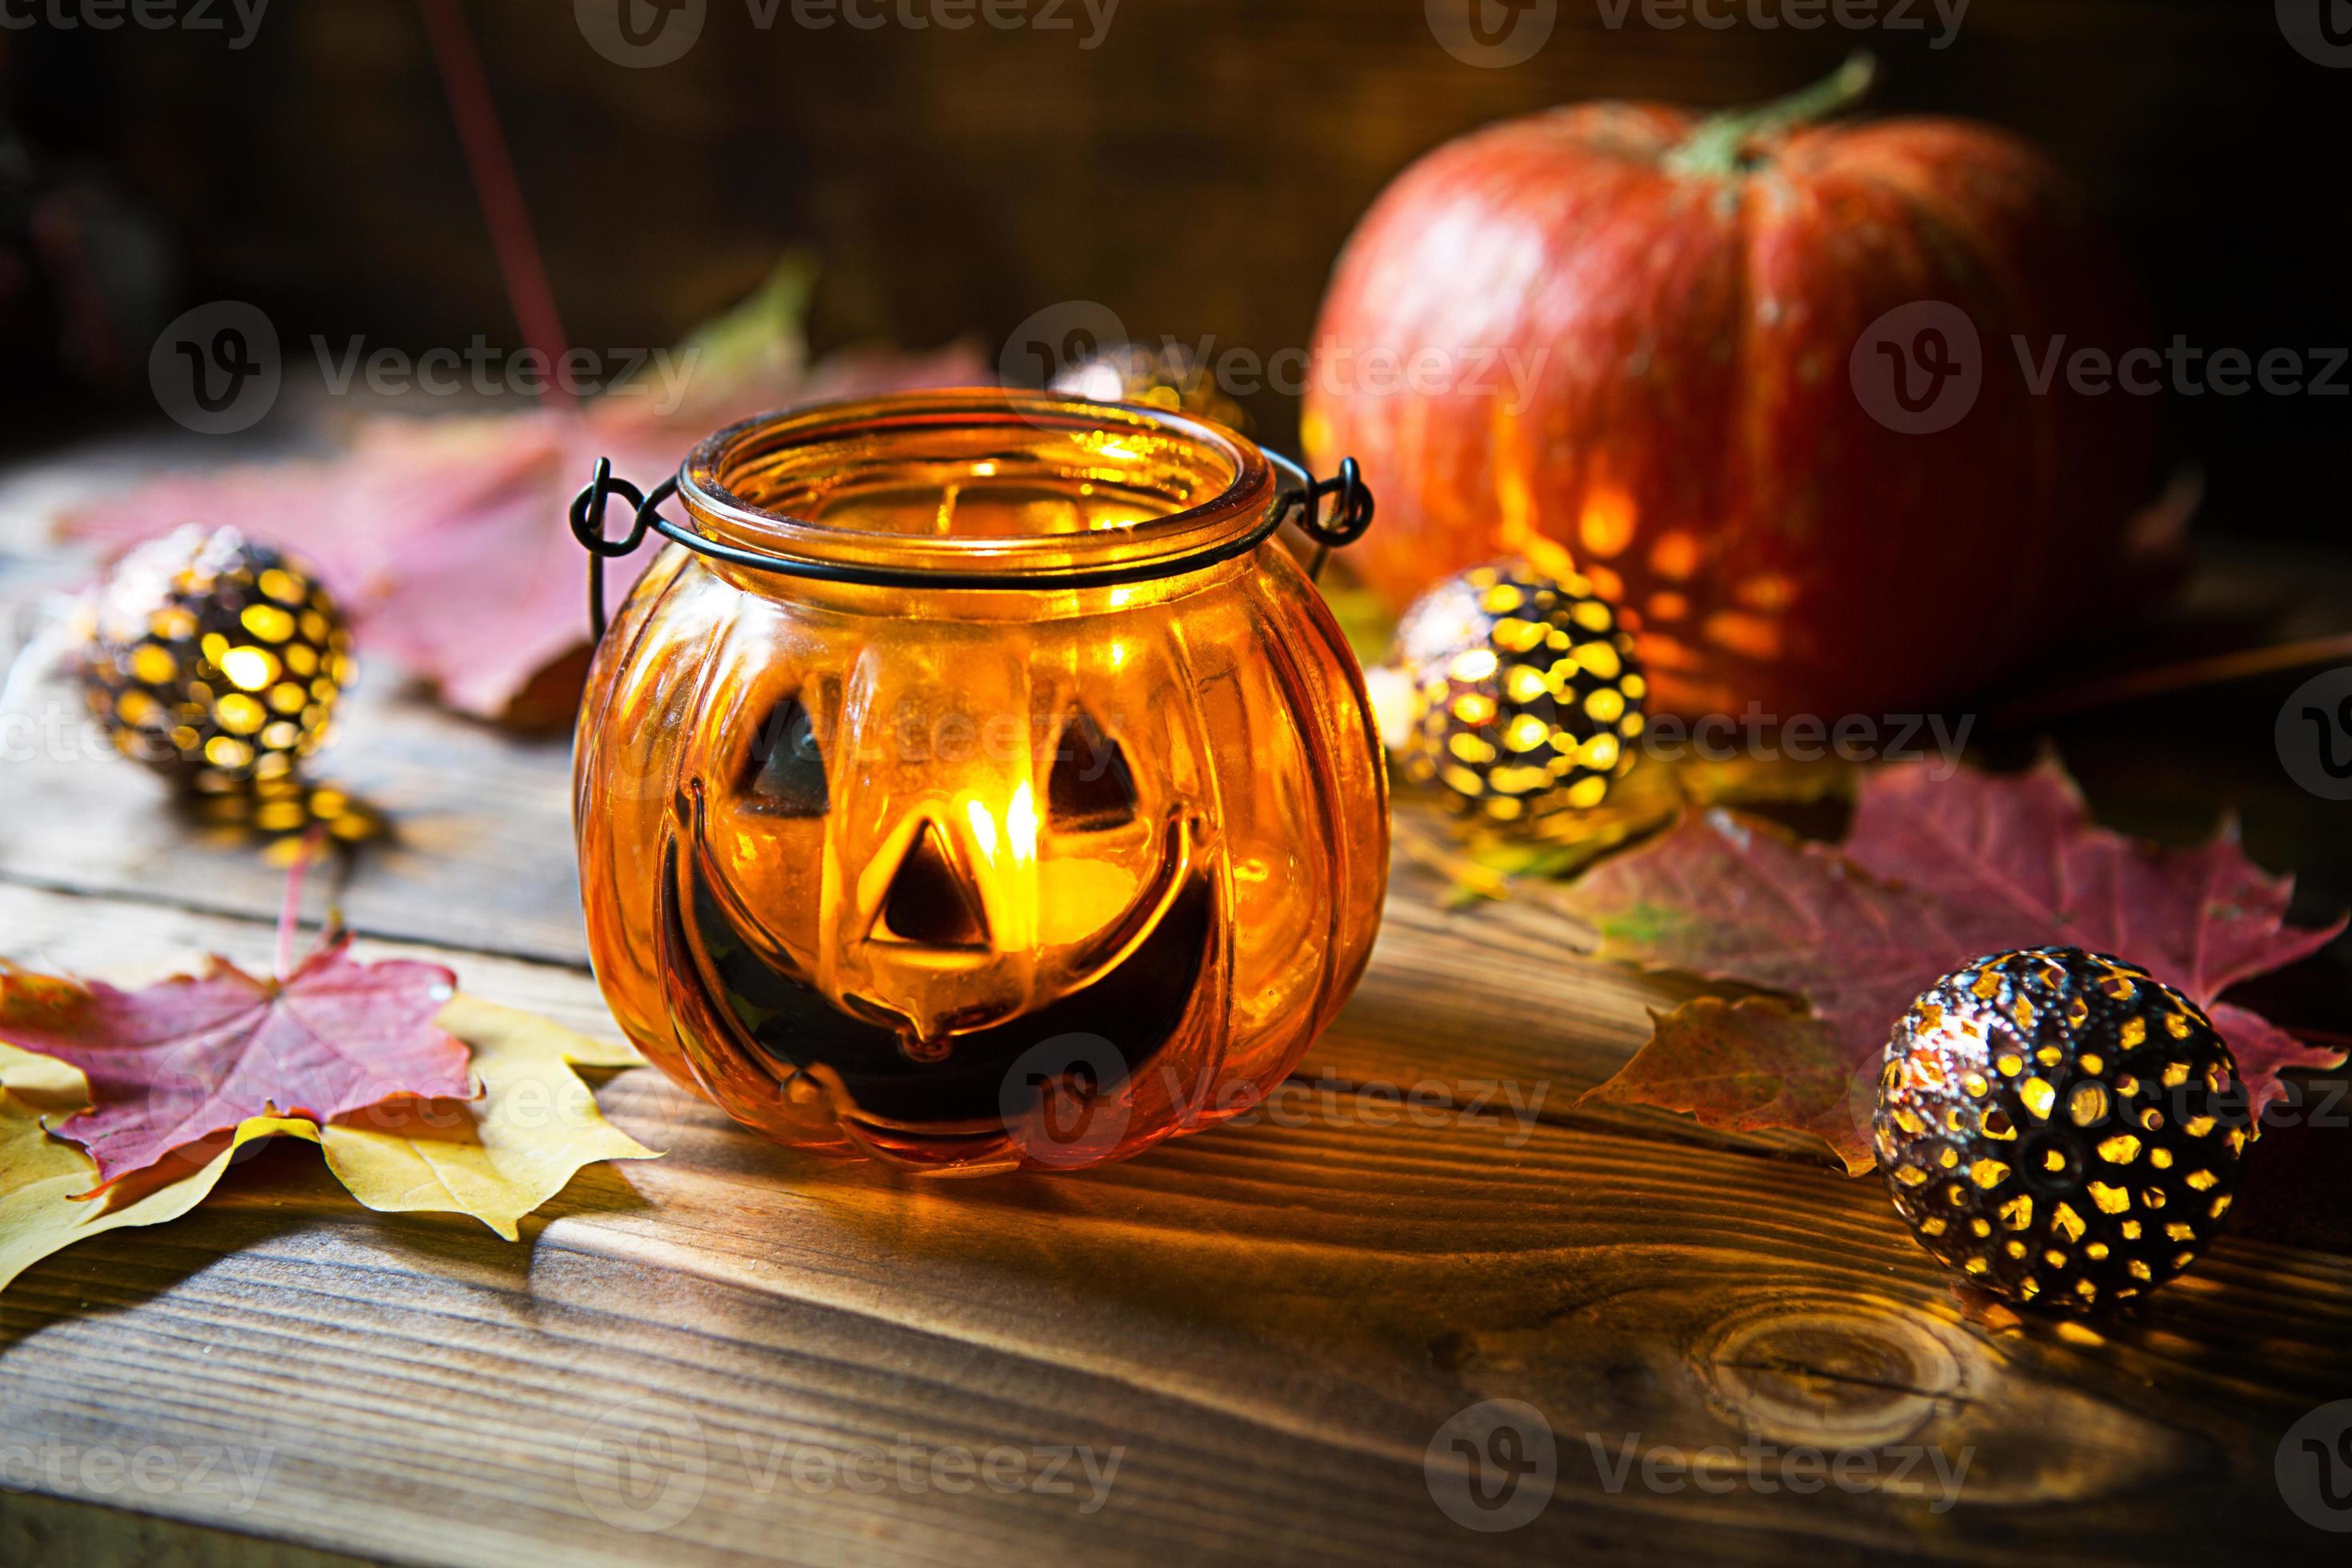 lampa pumpa med ögon och mun tillverkad av glas och naturlig orange pumpa  på en trä- tabell med gul och röd lönn löv. halloween, värma höst atmosfär.  runda krans, ljus i en